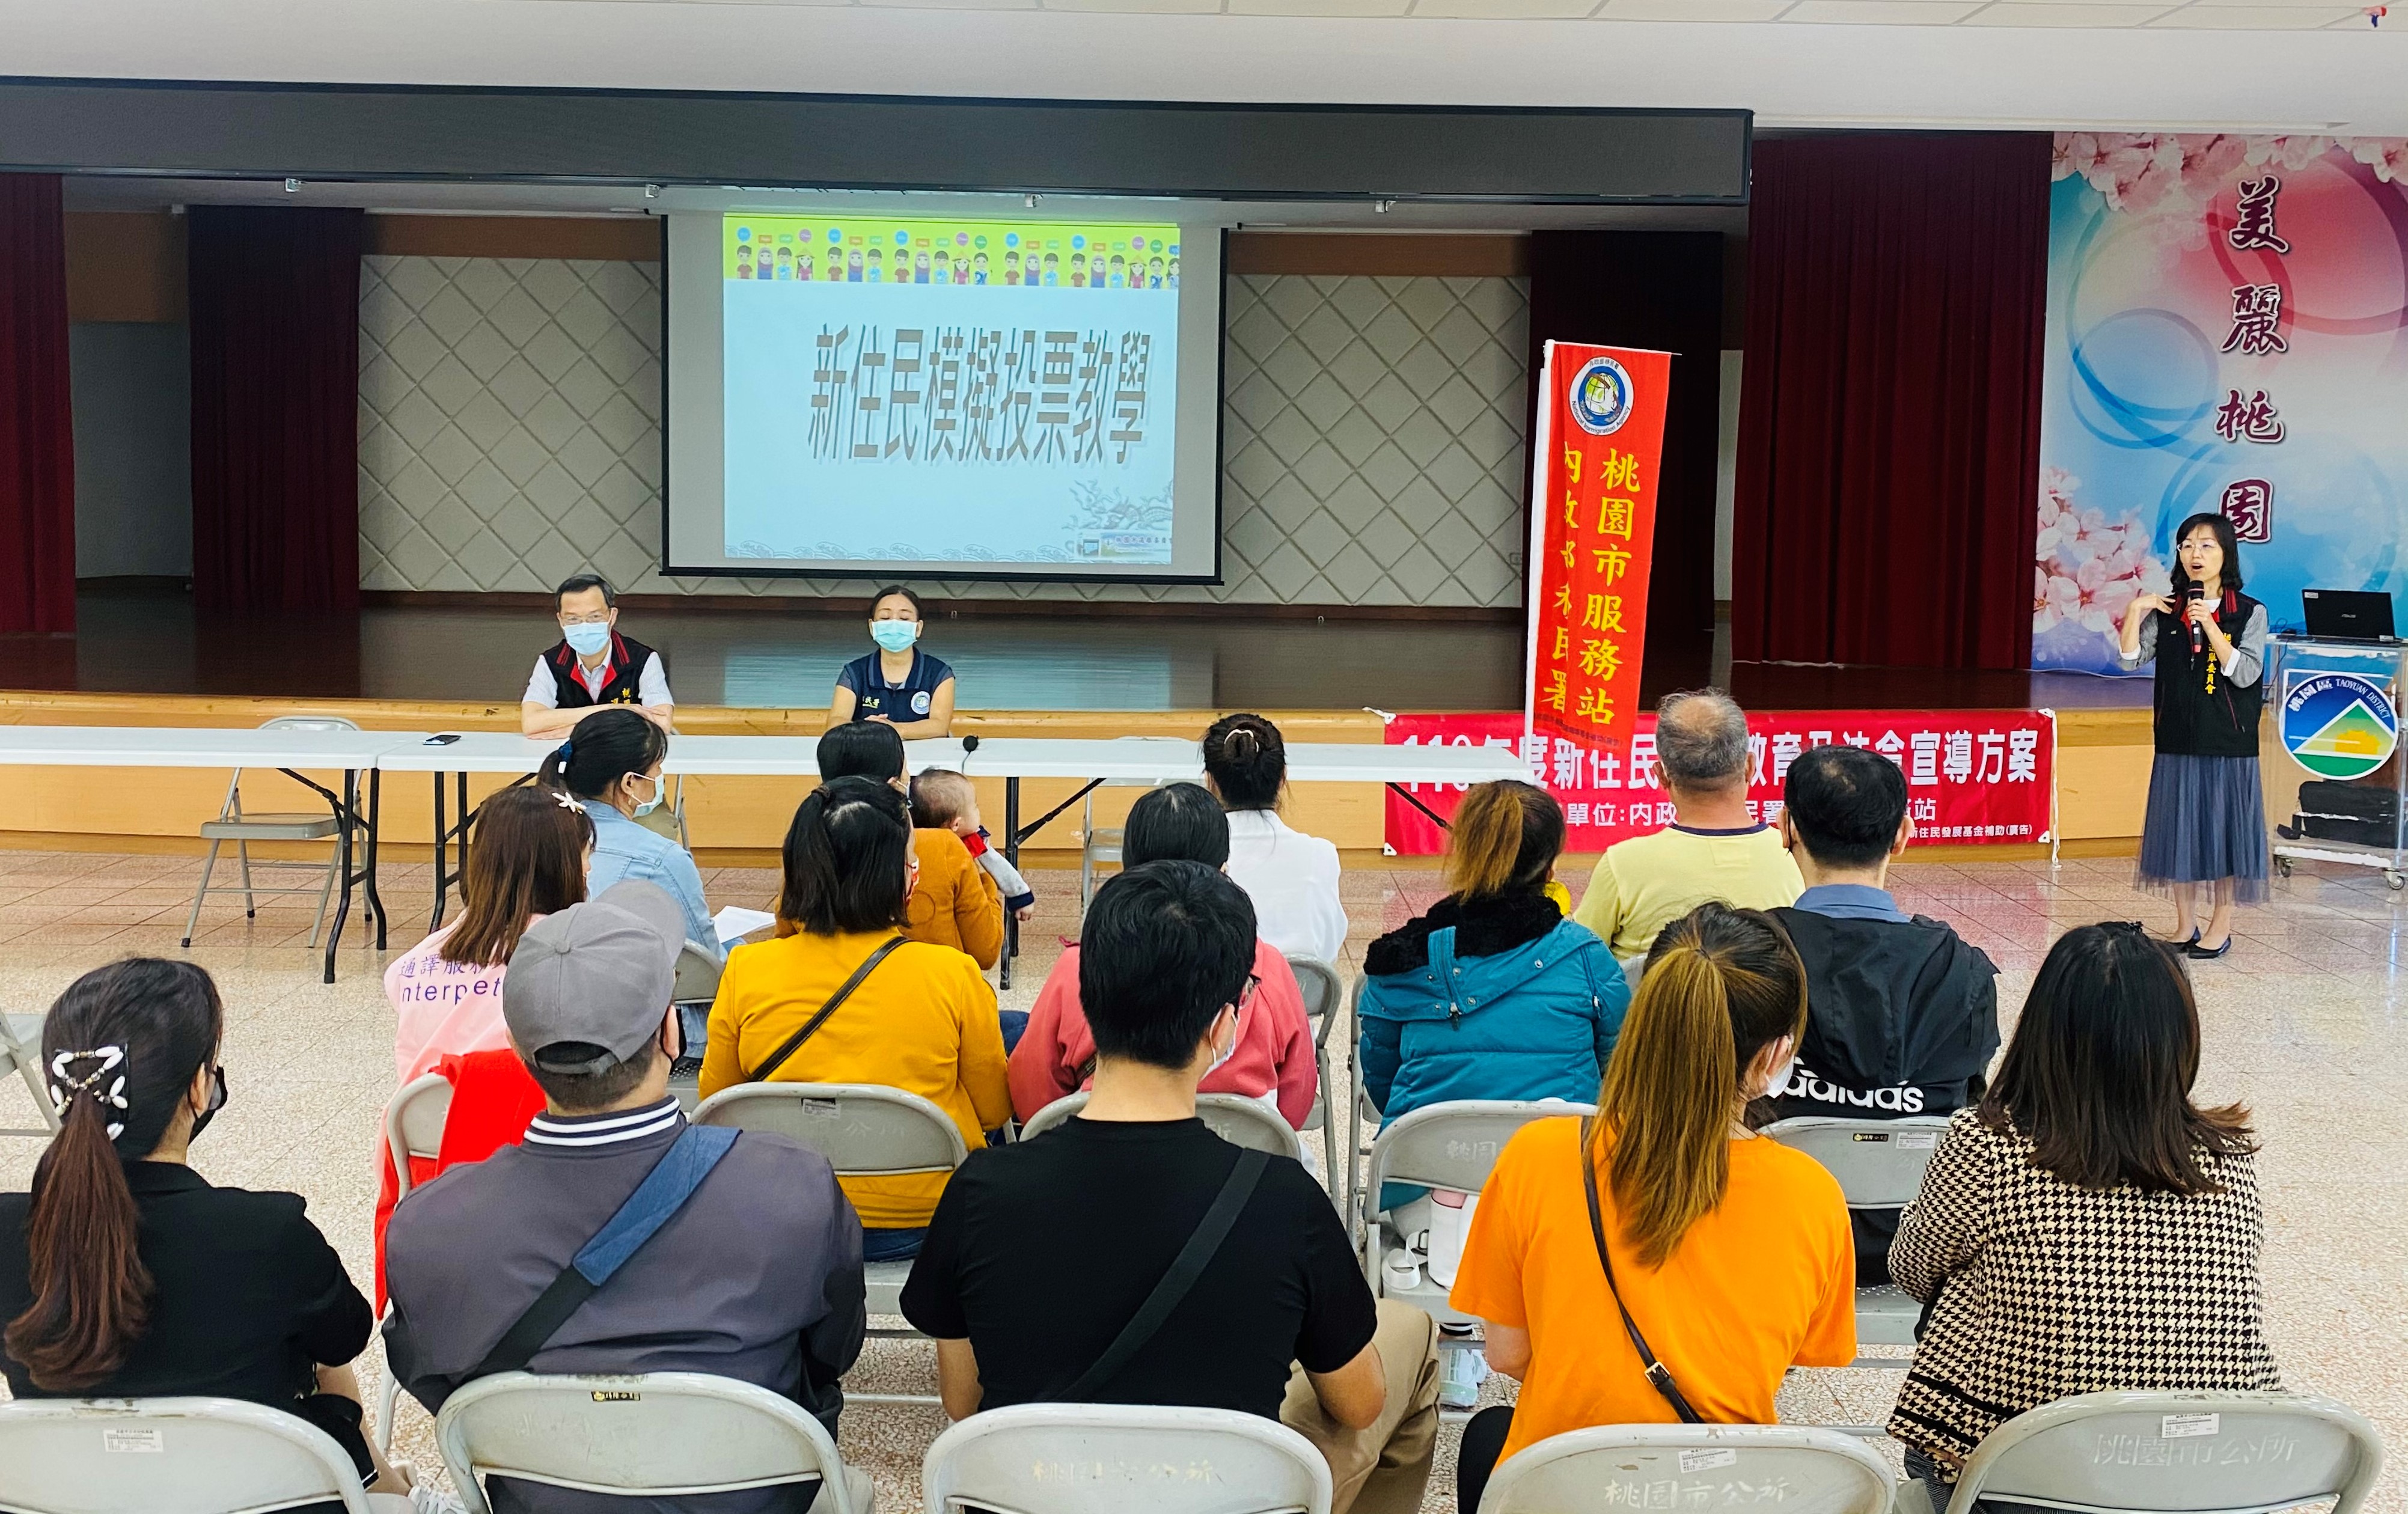 Situs web Kantor Pusat Layanan Kota Taoyuan Penduduk Baru Referendum Simulasi Pengajaran Menyediakan Pengumuman Pemilihan dalam Berbagai Bahasa. Sumber : Kantor Pusat Layanan Kota Taoyuan